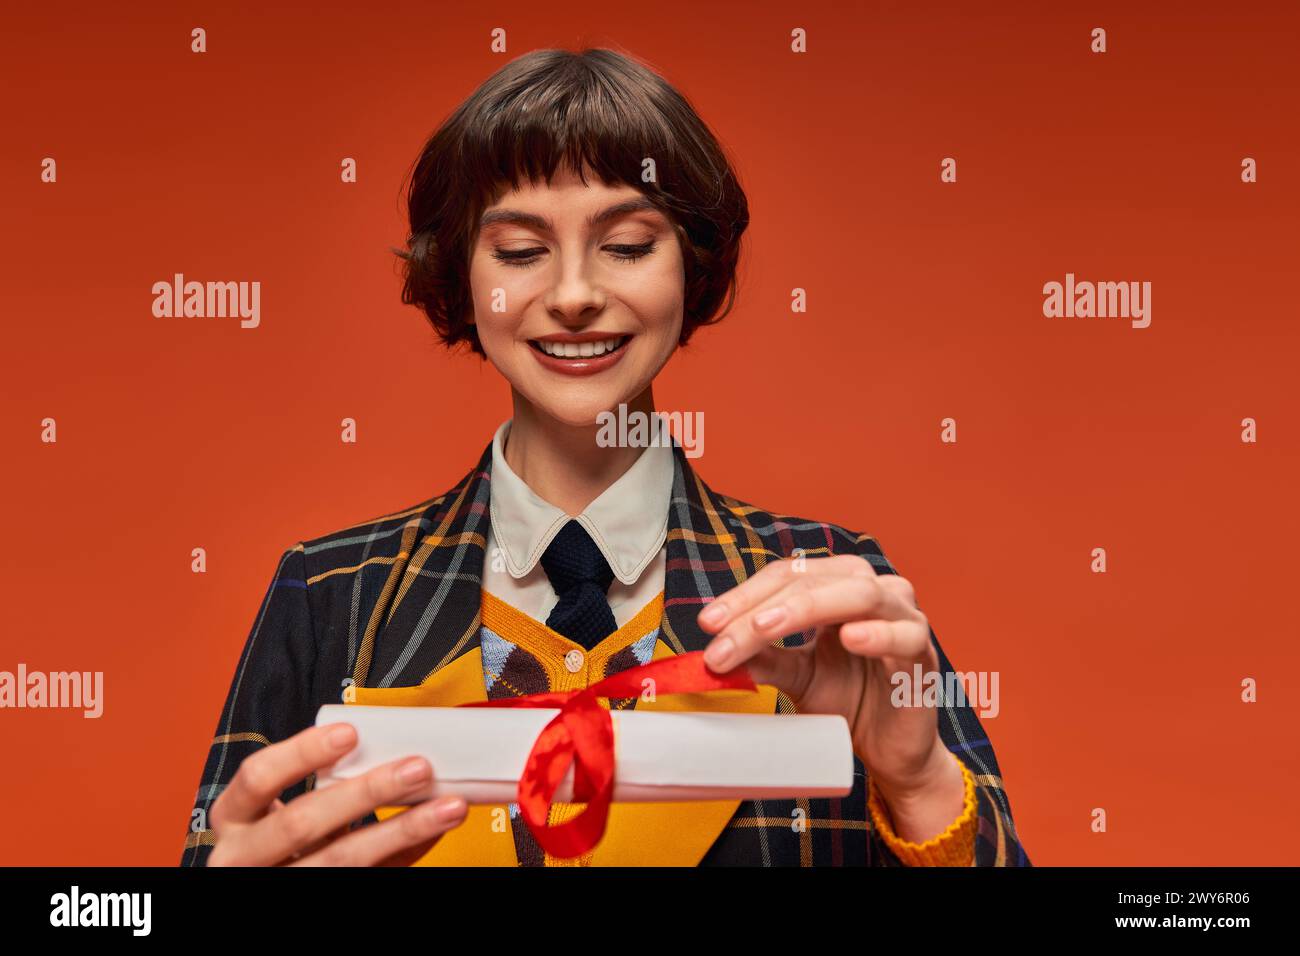 Porträt eines glücklichen College-Mädchens in karierter Uniform mit Blick auf das Abschlusszeugnis vor orangem Hintergrund Stockfoto